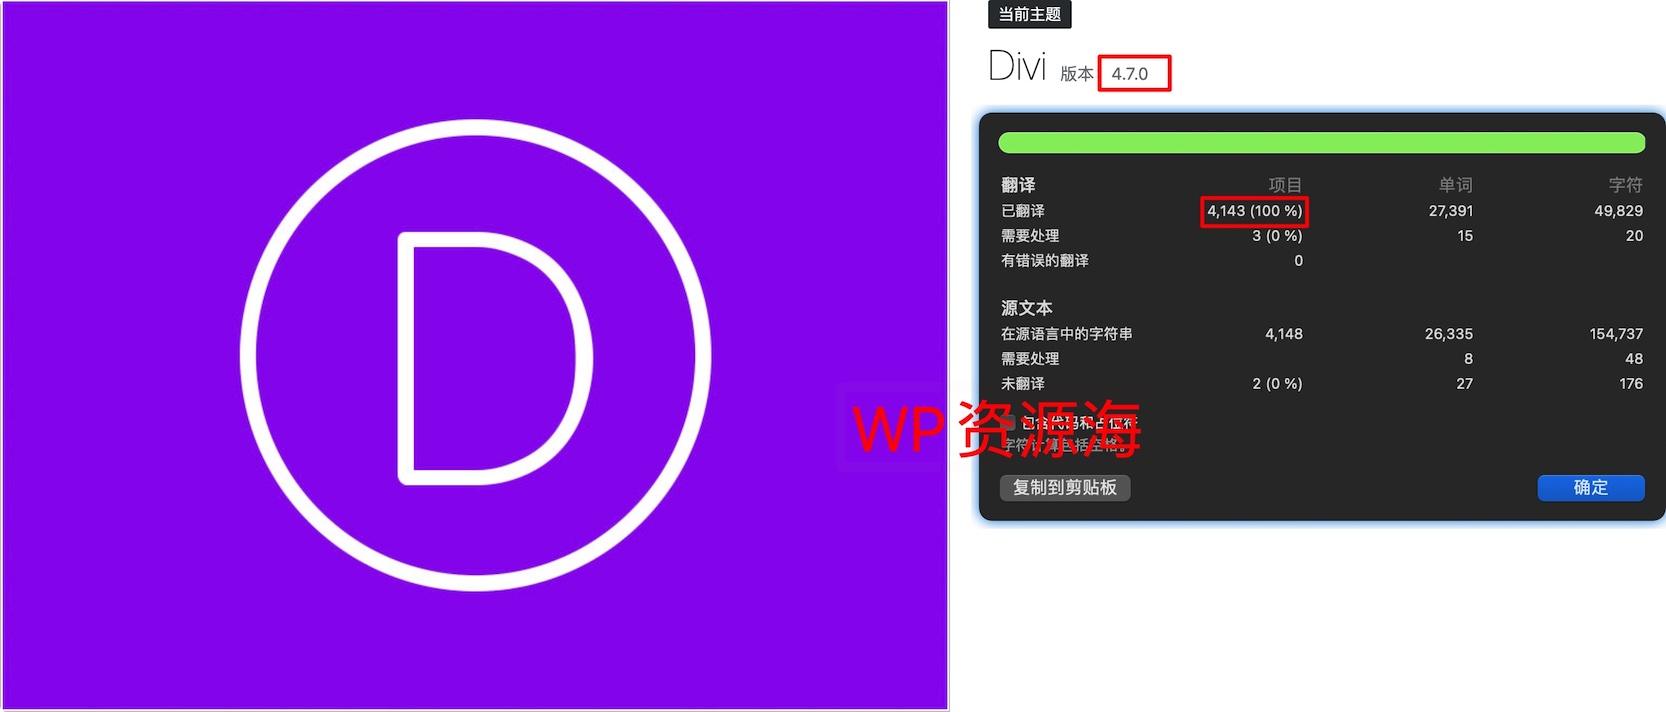 【带key】Divi主题v4.8.1独家100%深度汉化 在线更新